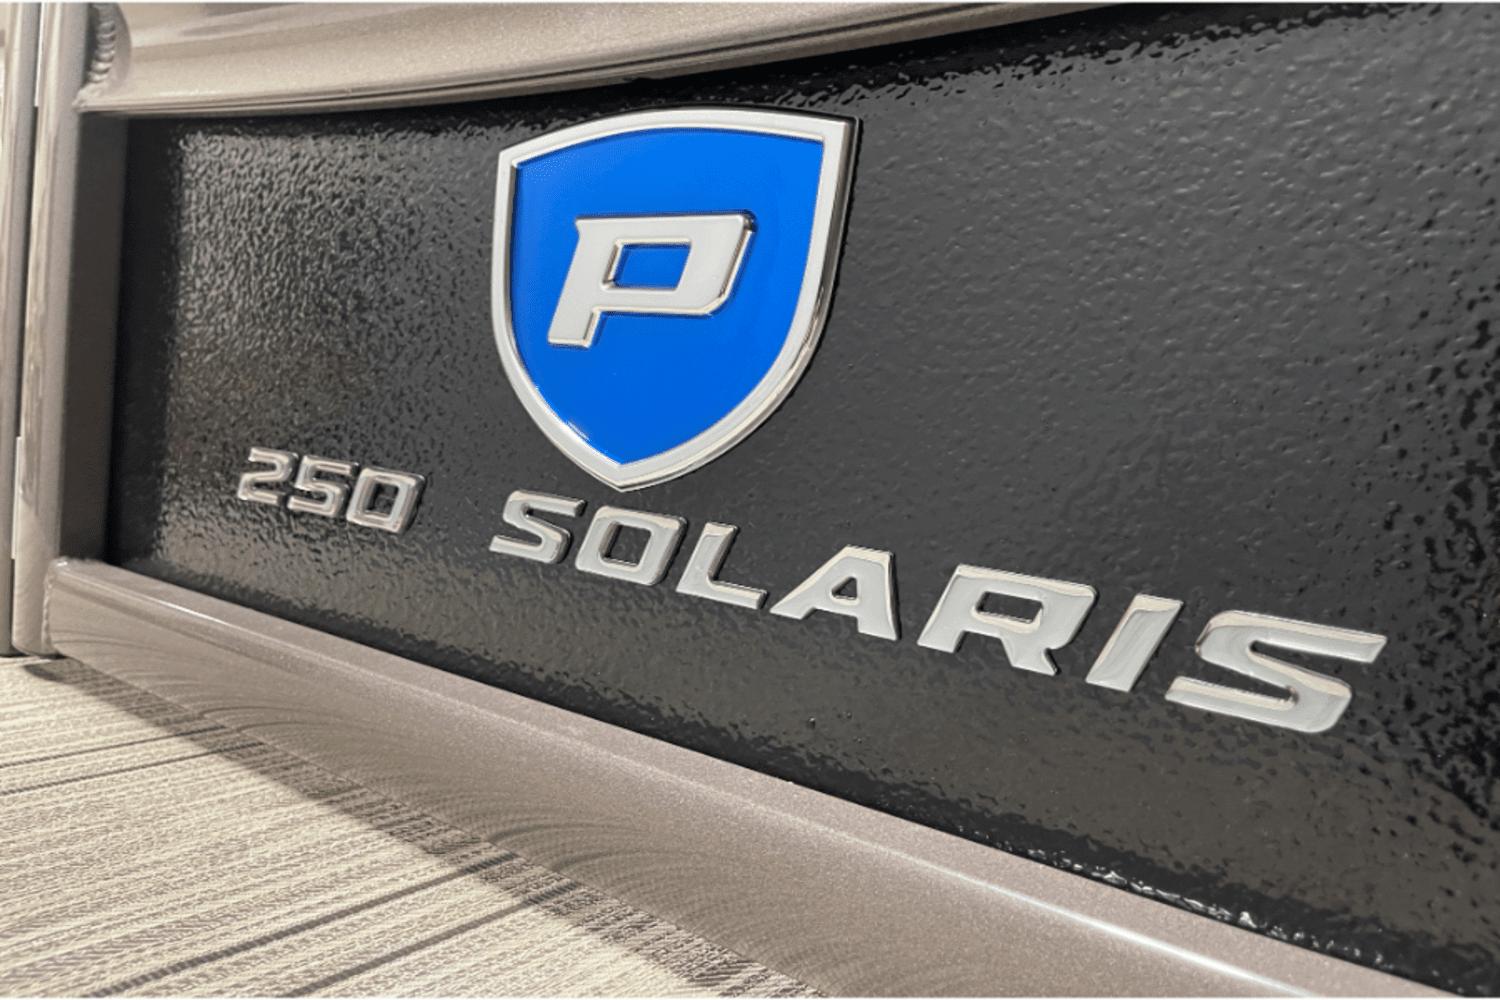 2023 Premier 250 Solaris